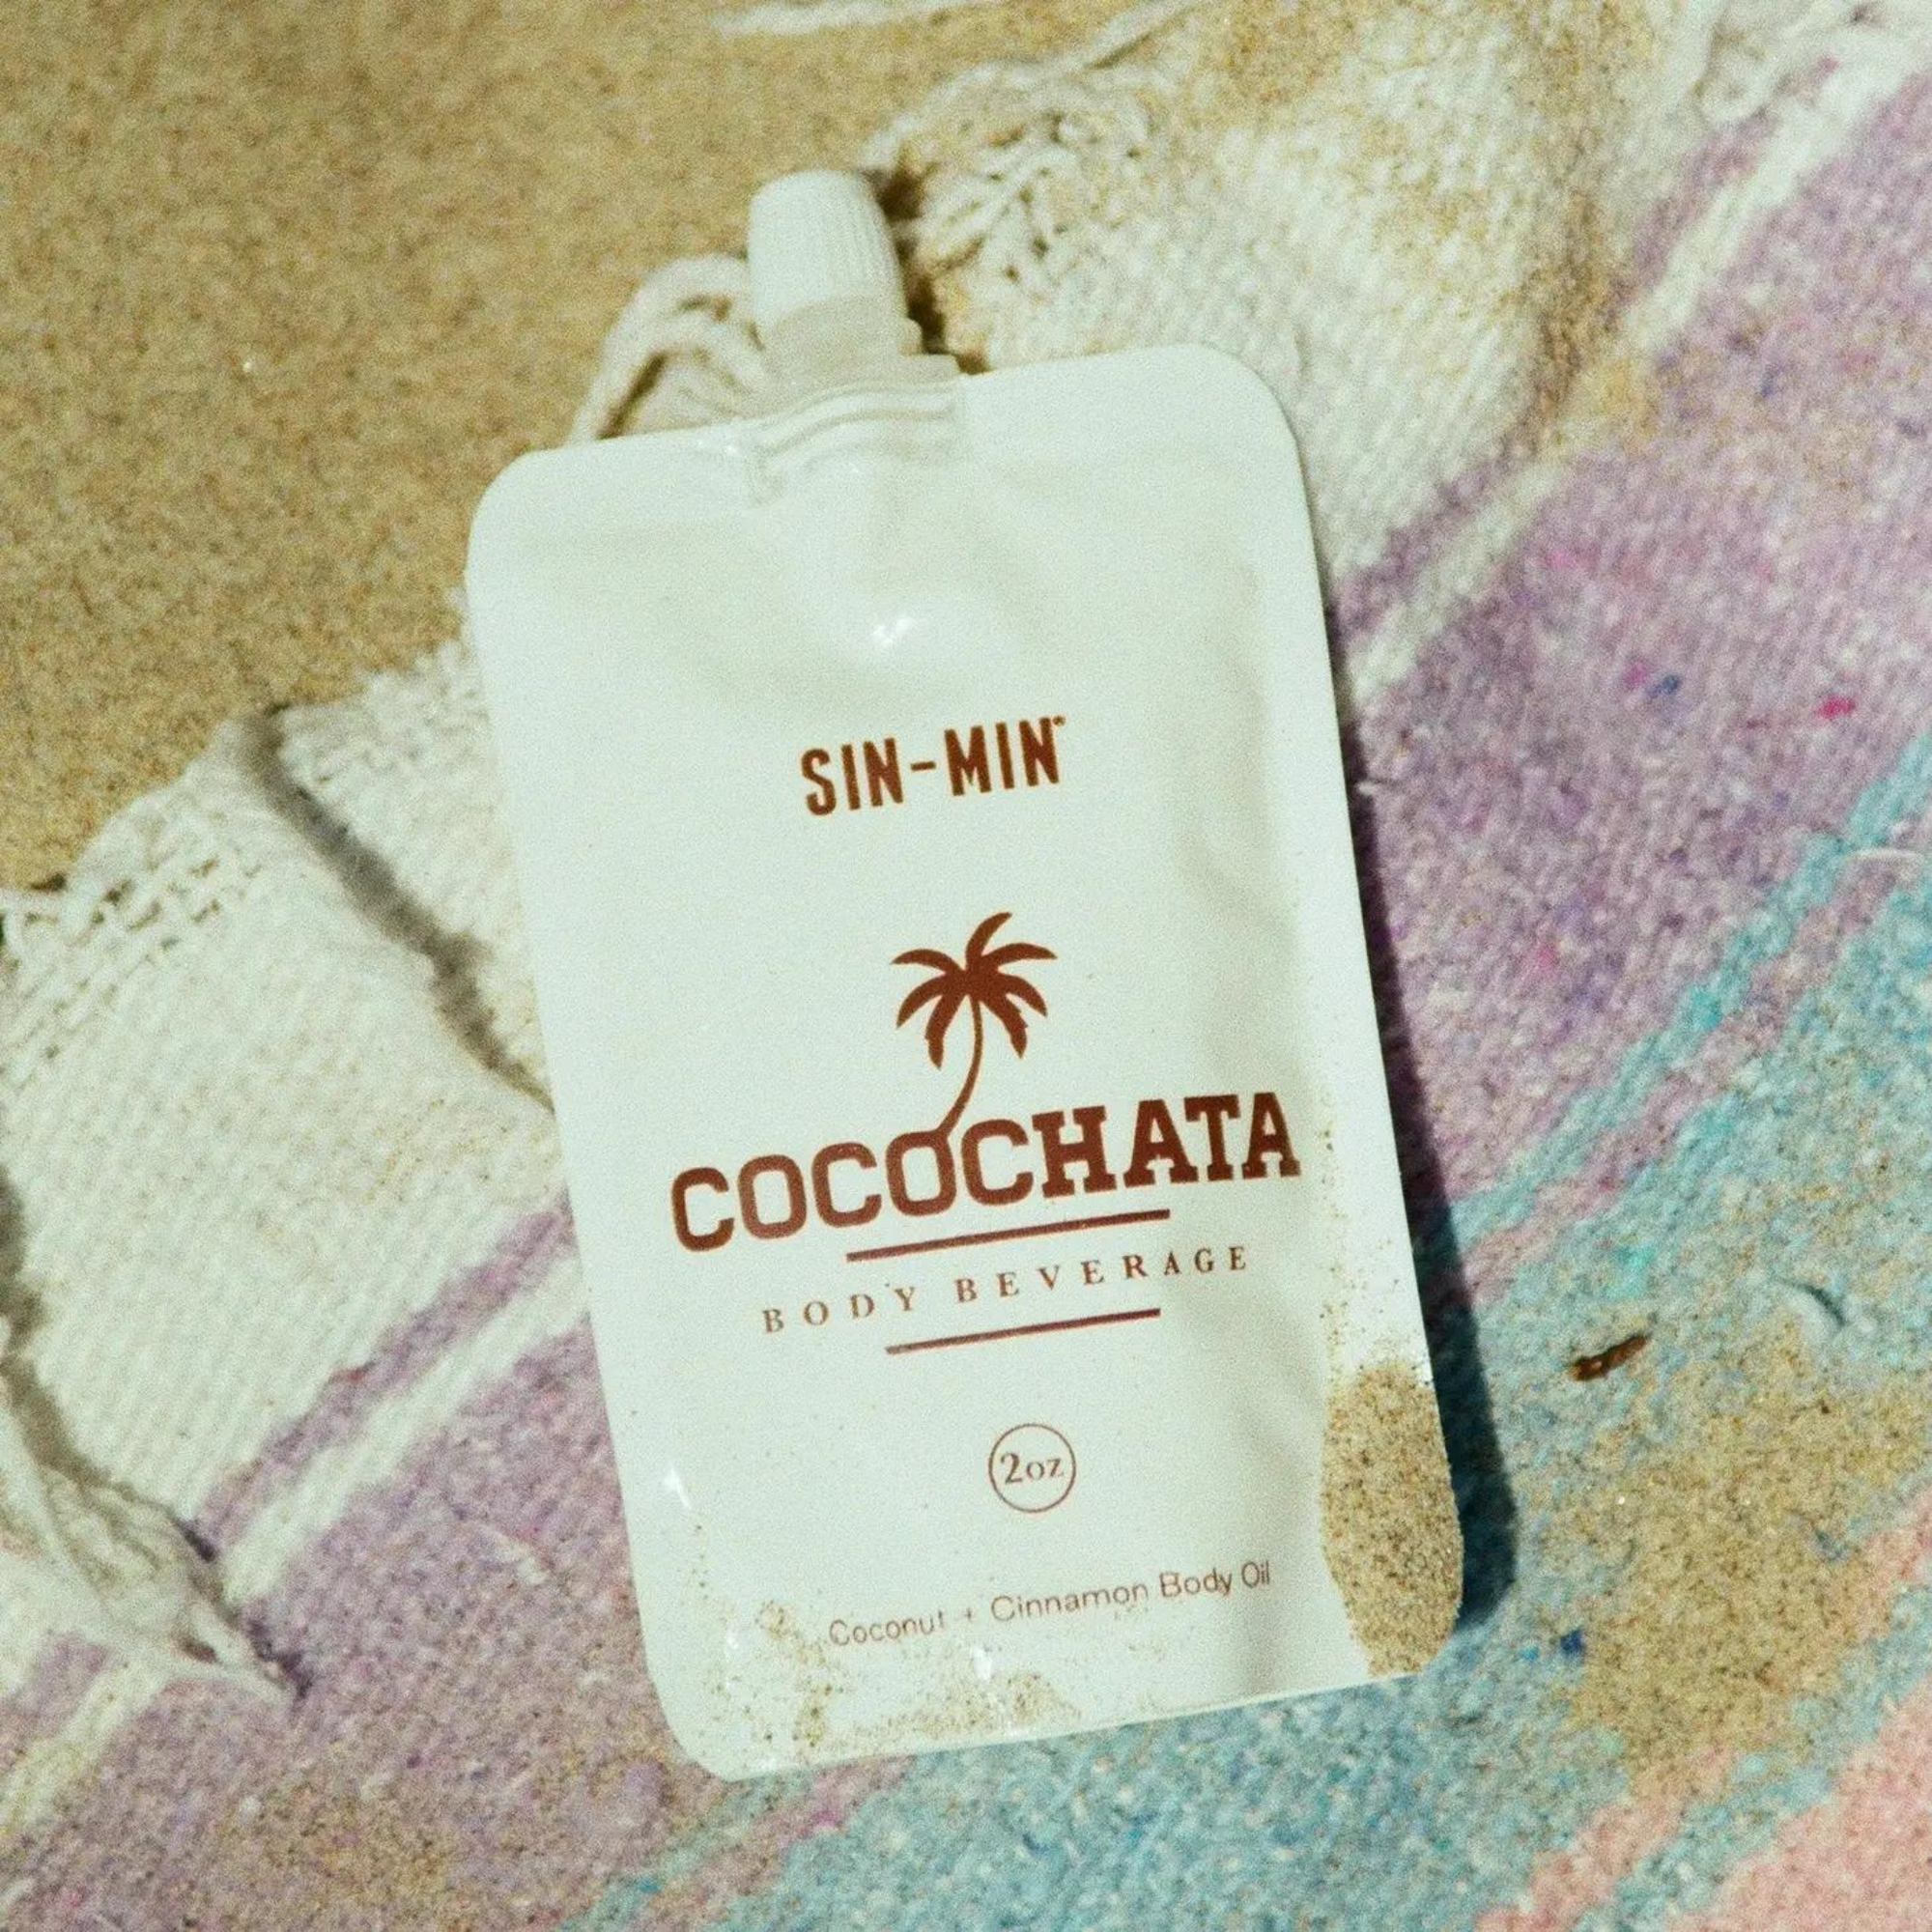 Cocochata Body Beverage: Coconut + Cinnamon Body Oil